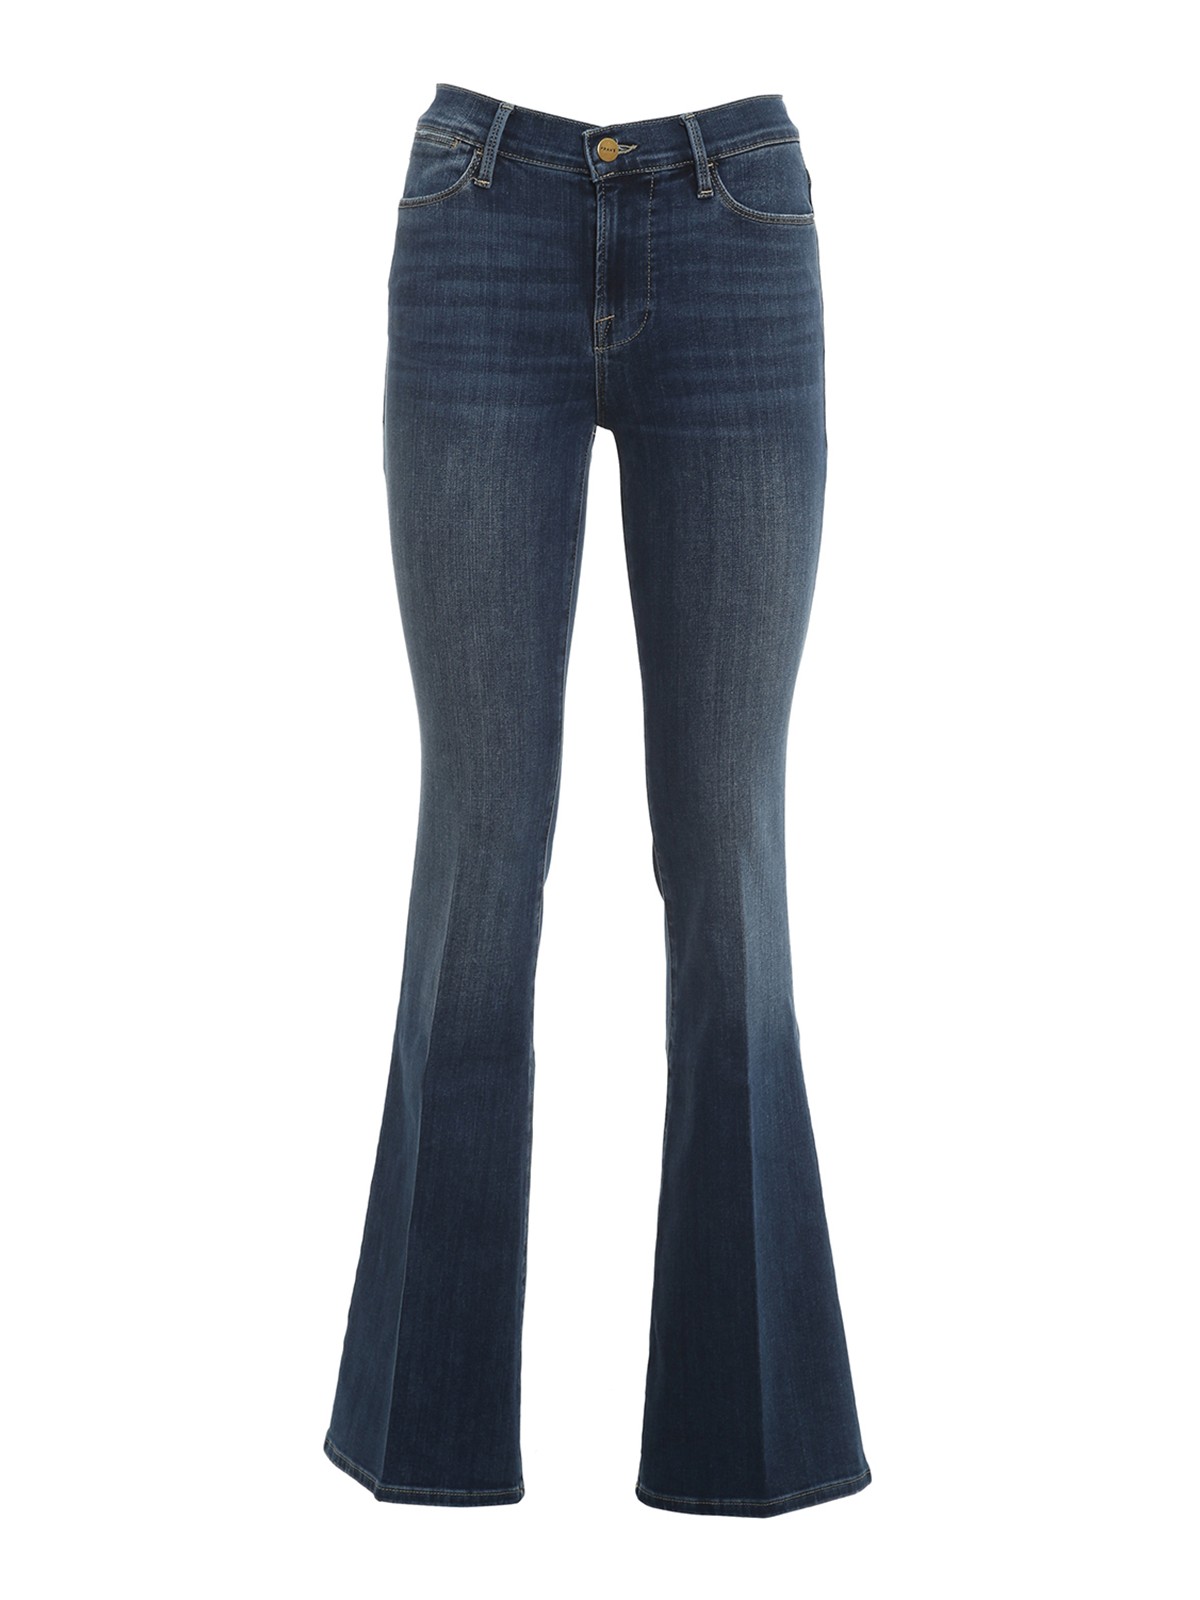 Flared jeans Frame Denim - Le High Flare jeans - LHF865LUPI | iKRIX.com